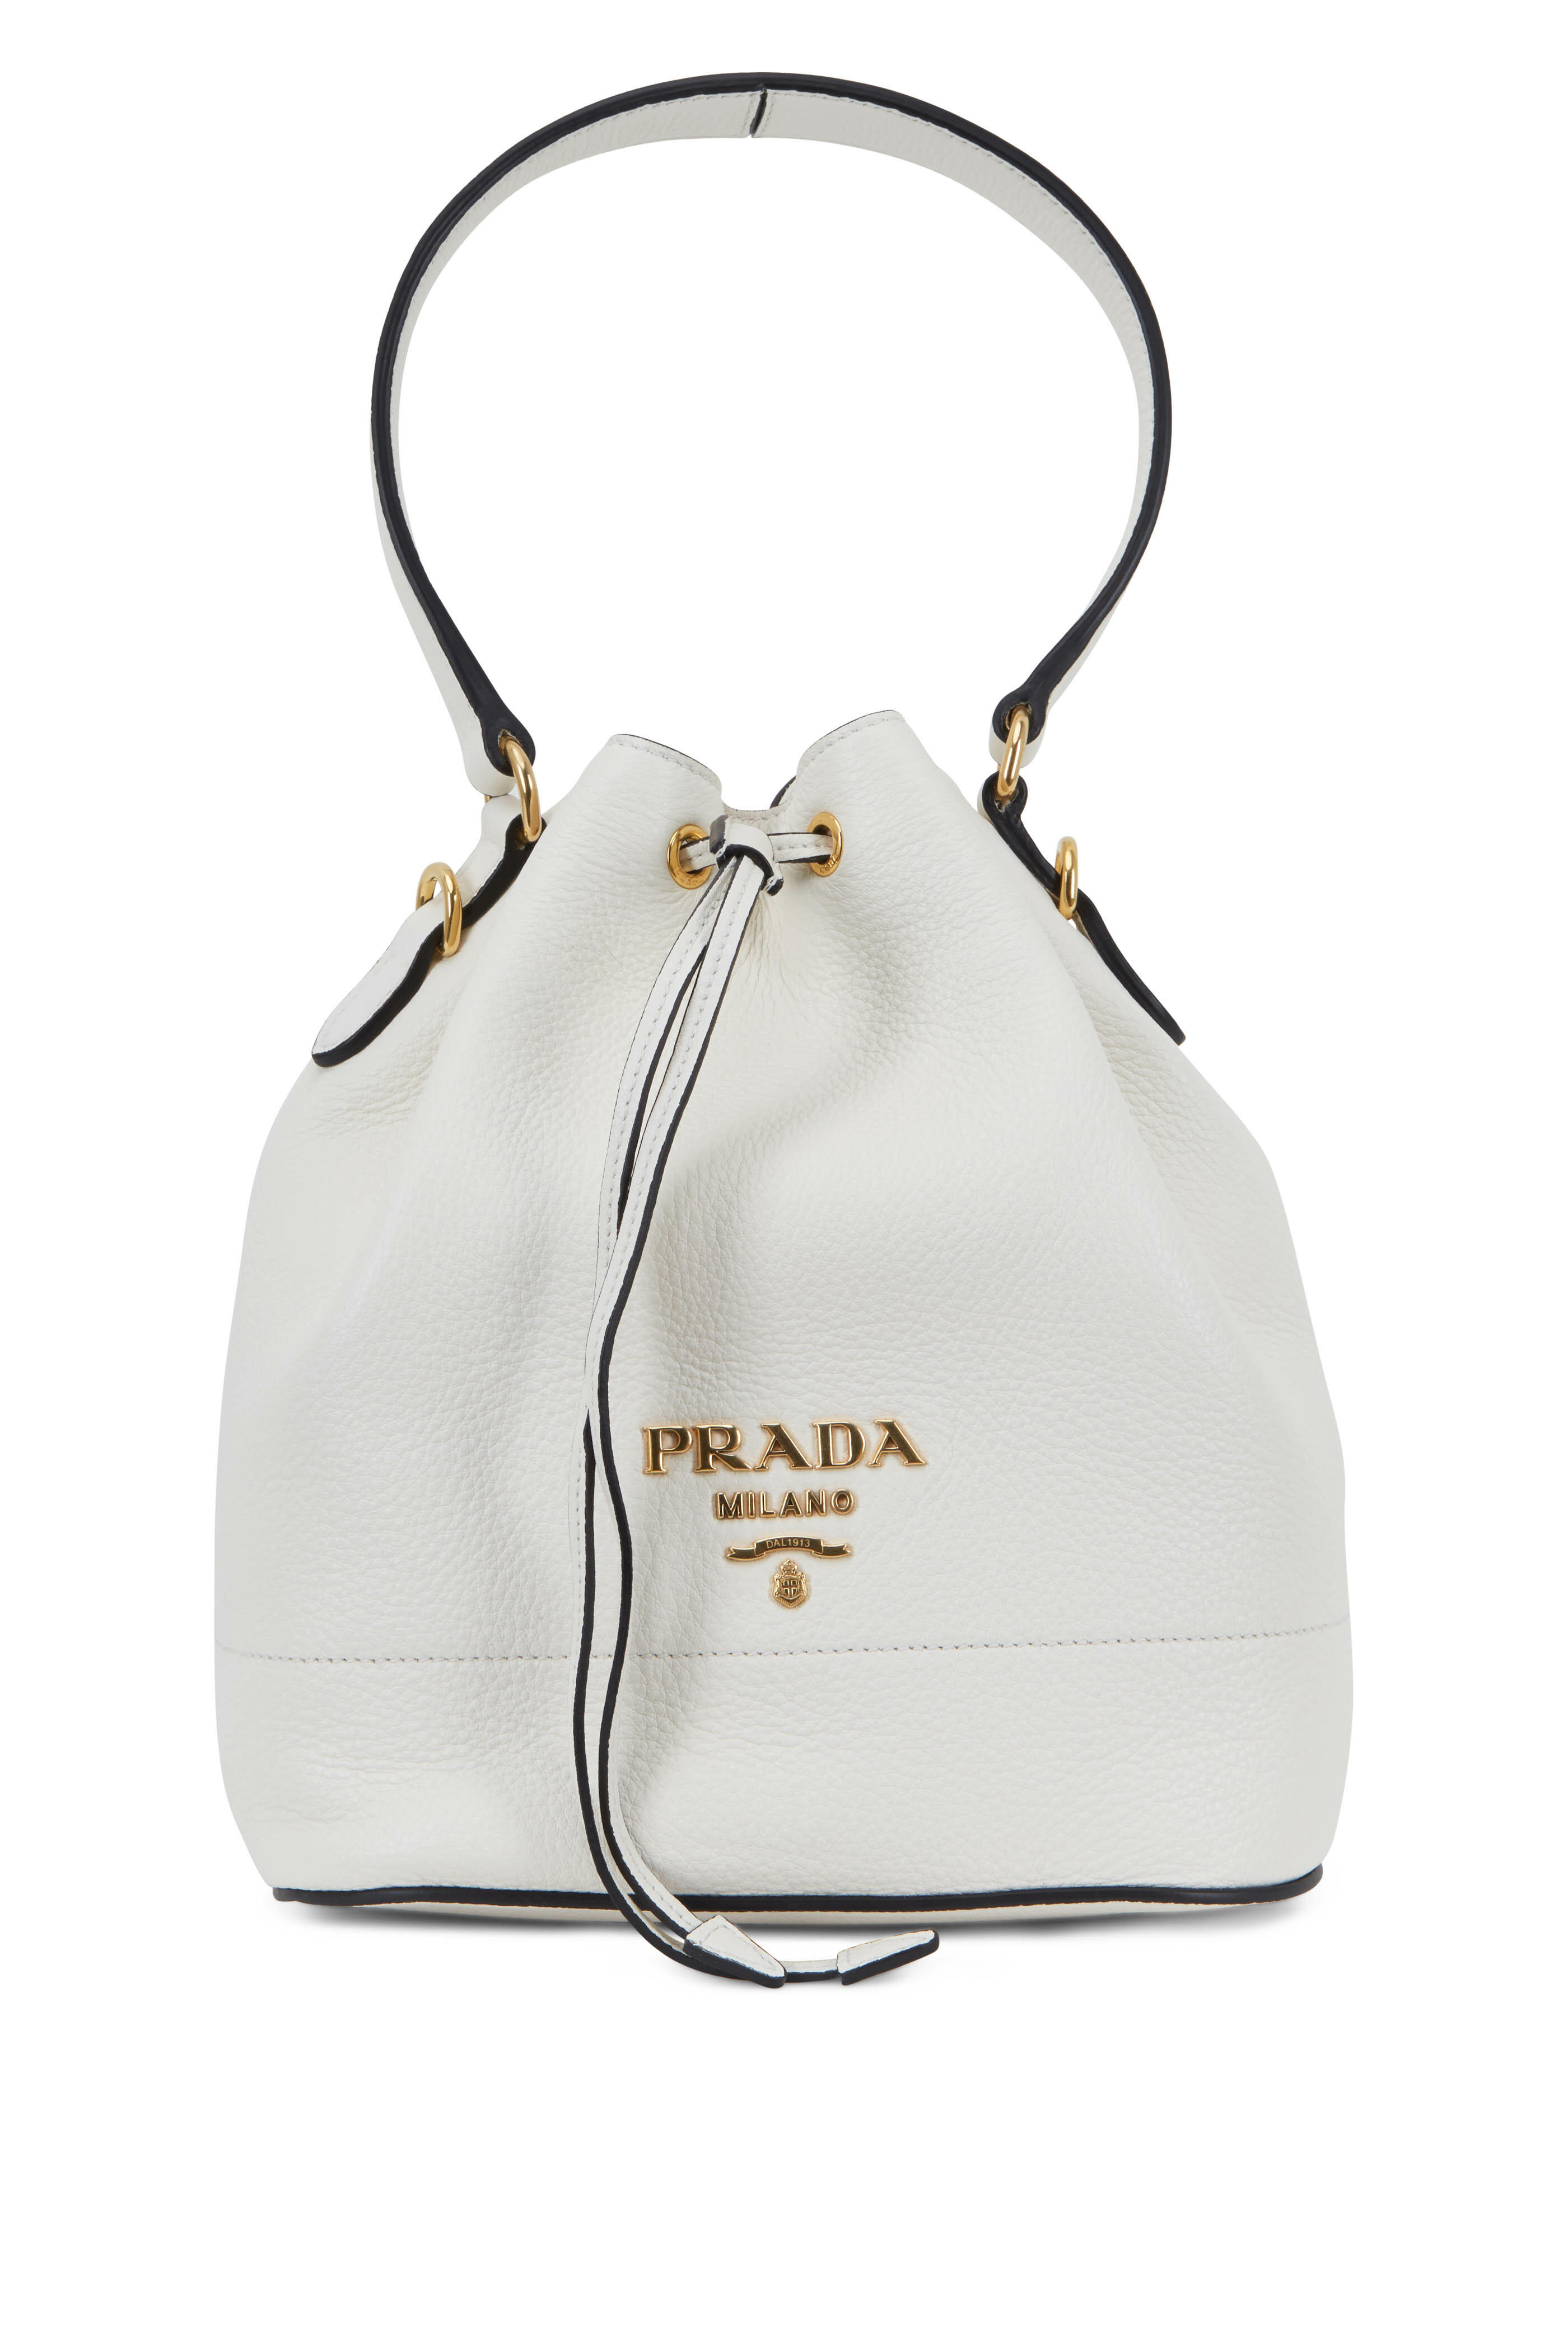 Prada - White Vitello Leather Bucket Bag | Mitchell Stores